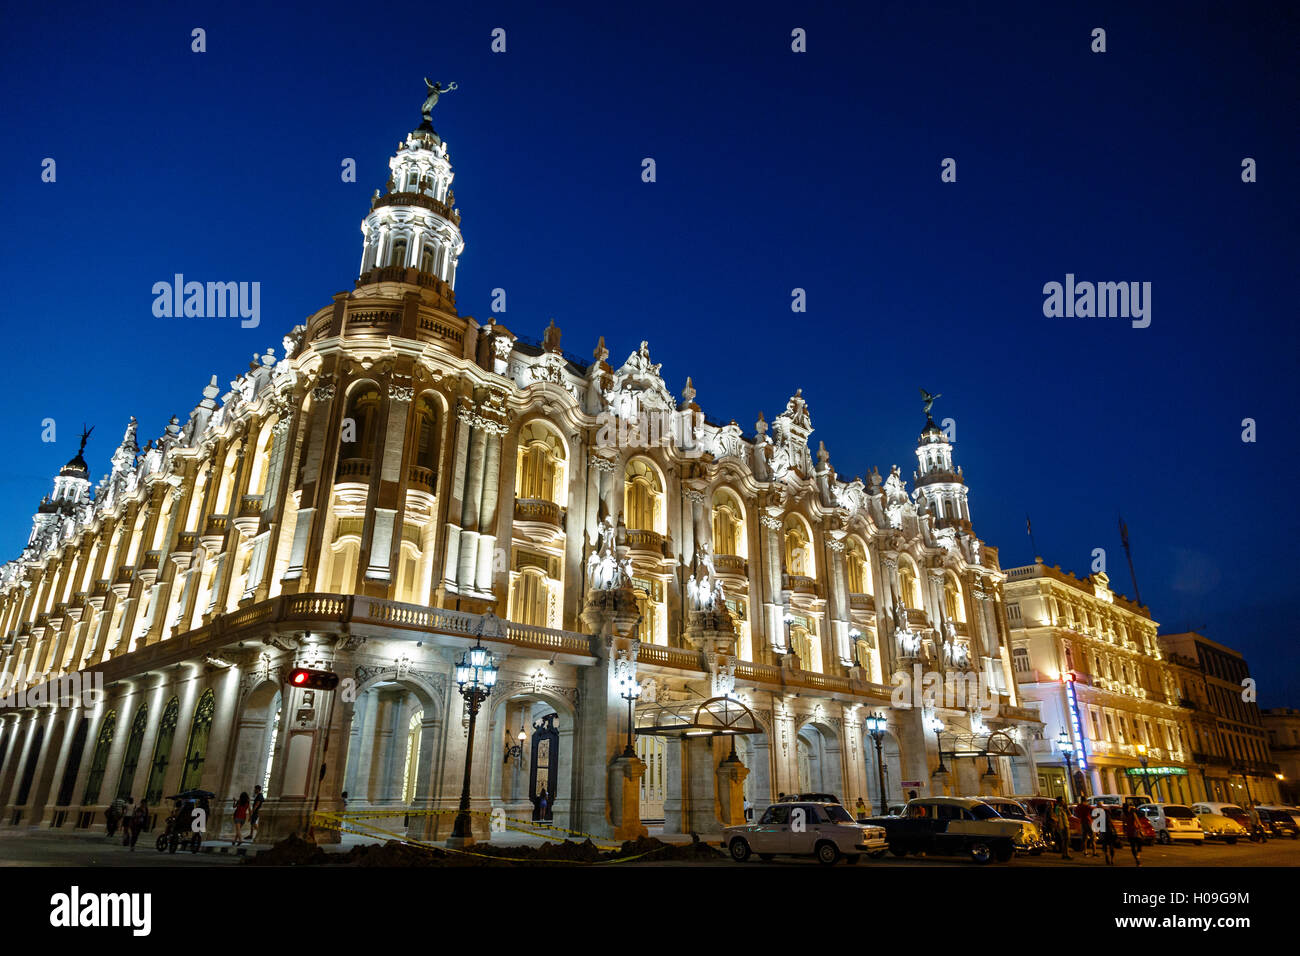 Le Grand Théâtre (Grand Theatre) est éclairée la nuit, La Havane, Cuba, Antilles, Caraïbes, Amérique Centrale Banque D'Images